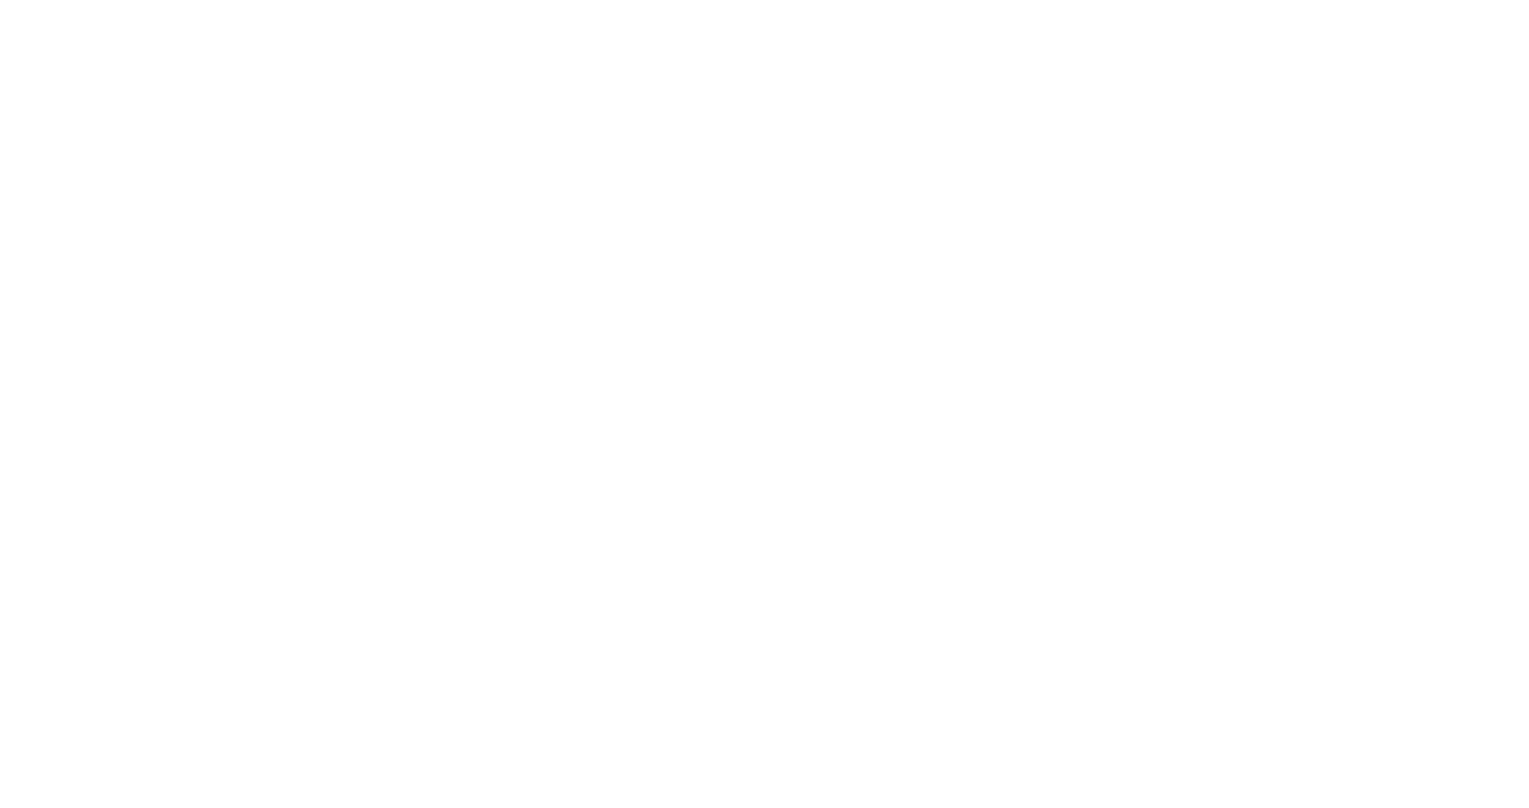 Кейс сервиса BRANDNATION - Дизайн этикетки меда с орехами. Брендинговое агентство BRANDNATION в Москве и Санкт-Петербурге. Услуги: разработка логотипа и фирменного стиля, дизайн упаковки, брендбук, ребрендинг, разработка сайта.